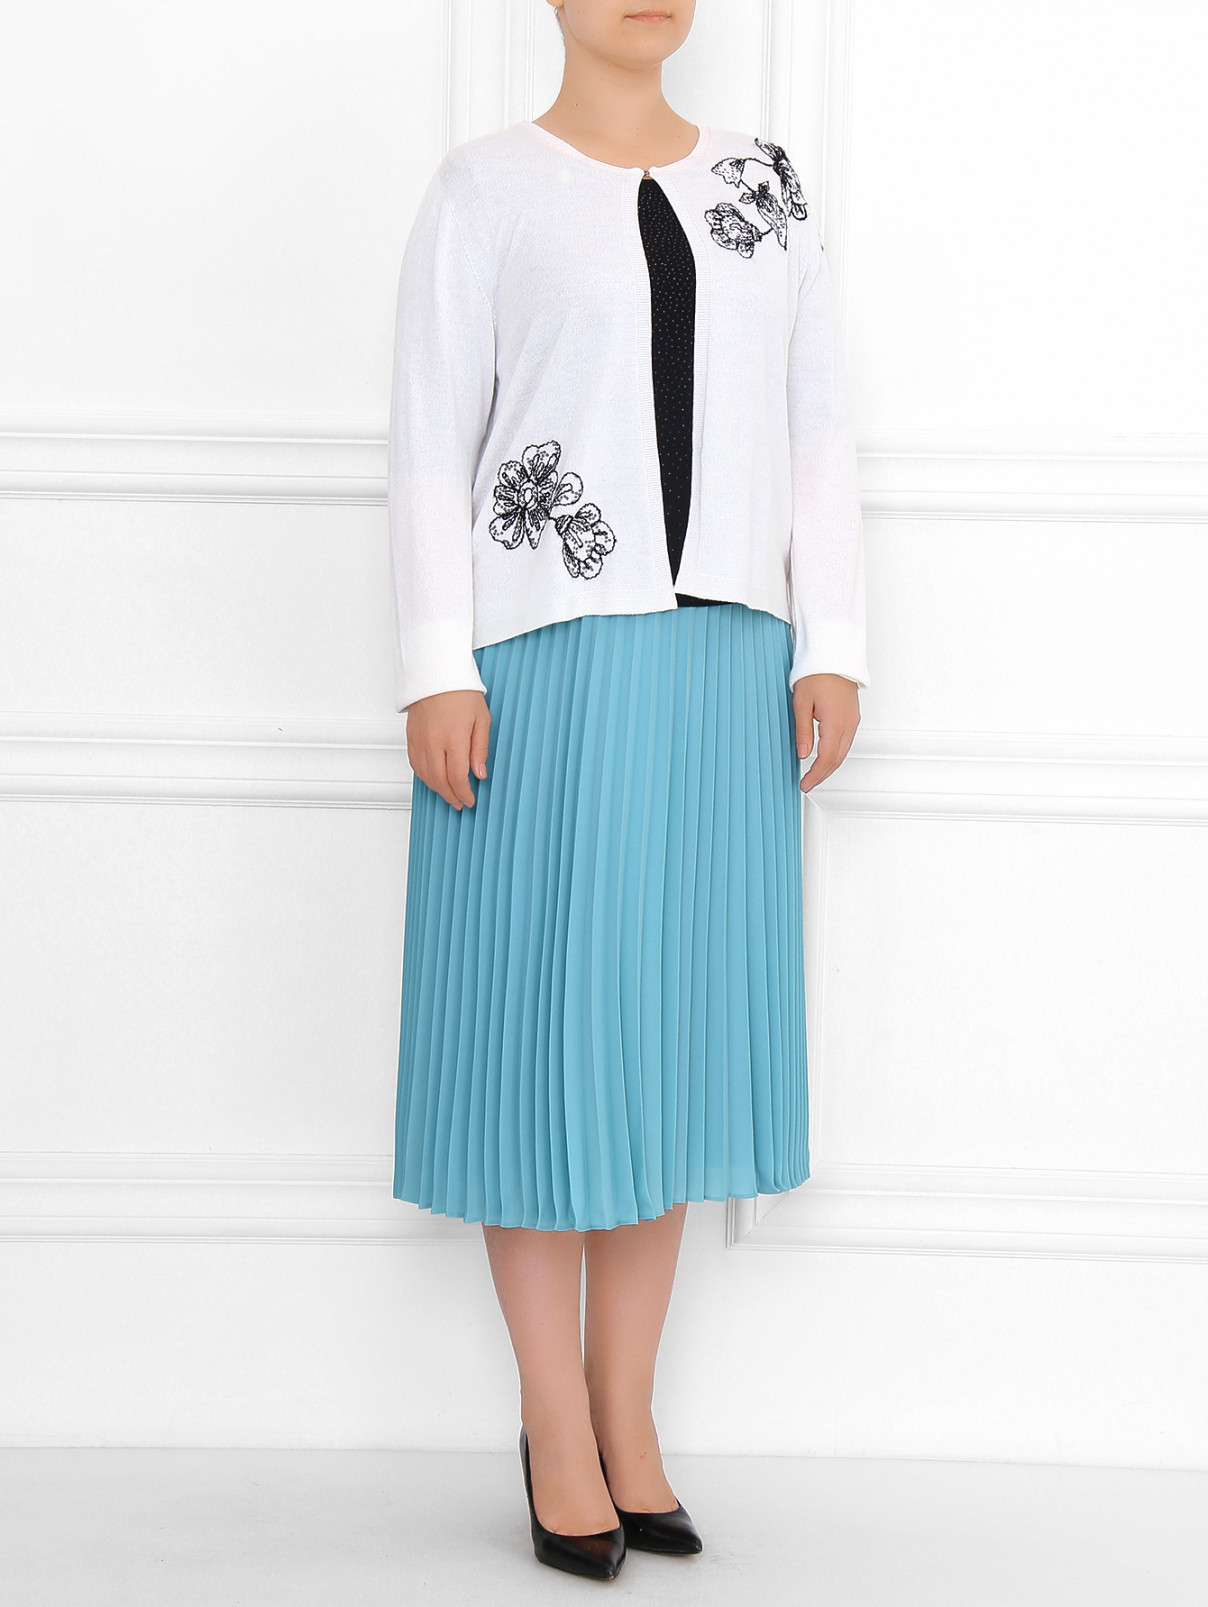 Кардиган с цветочным узором Marina Rinaldi  –  Модель Общий вид  – Цвет:  Белый